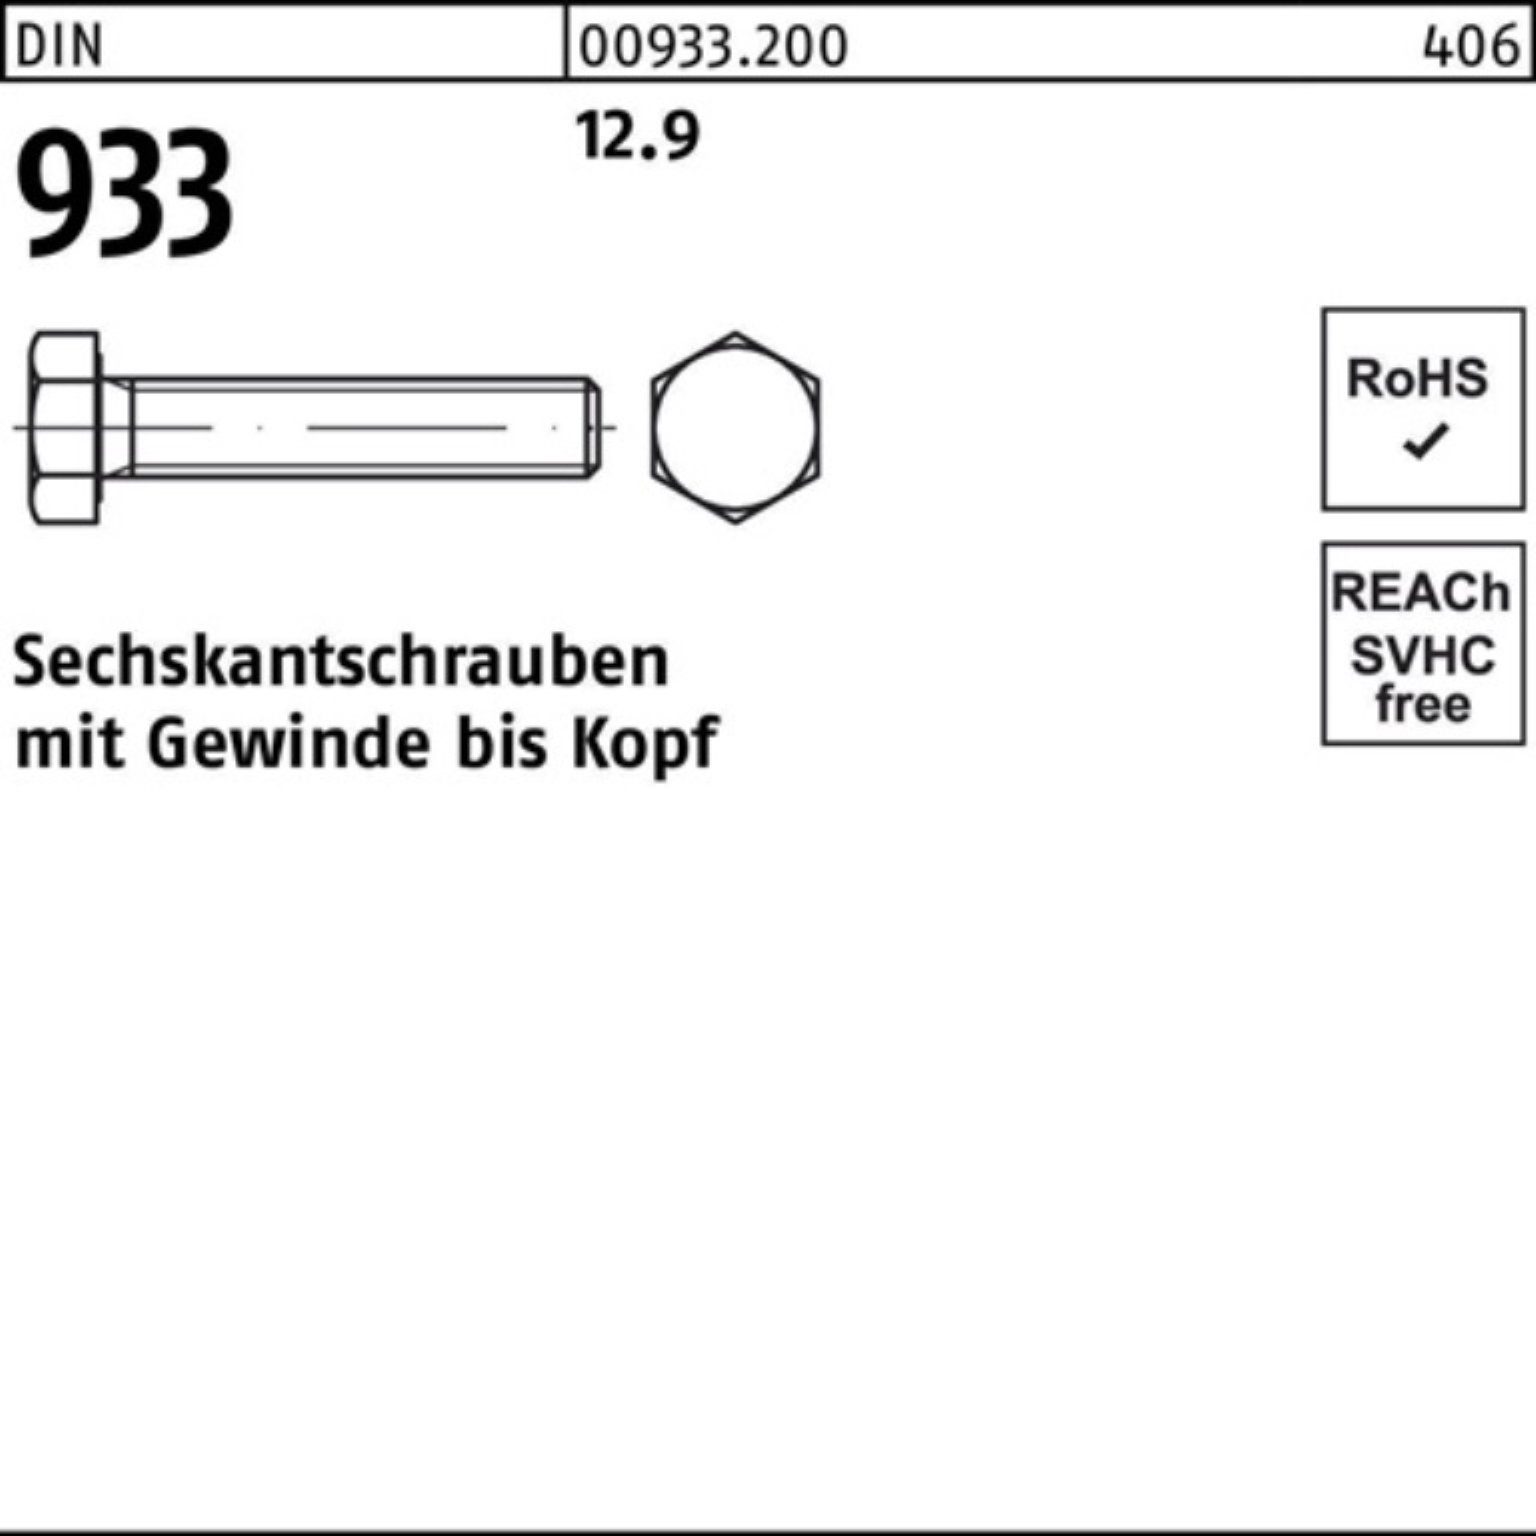 VG 16 Reyher 933 500er DIN M6x Sechskantschraube 12.9 Stück DIN Pack 500 Sechskantschraube 933